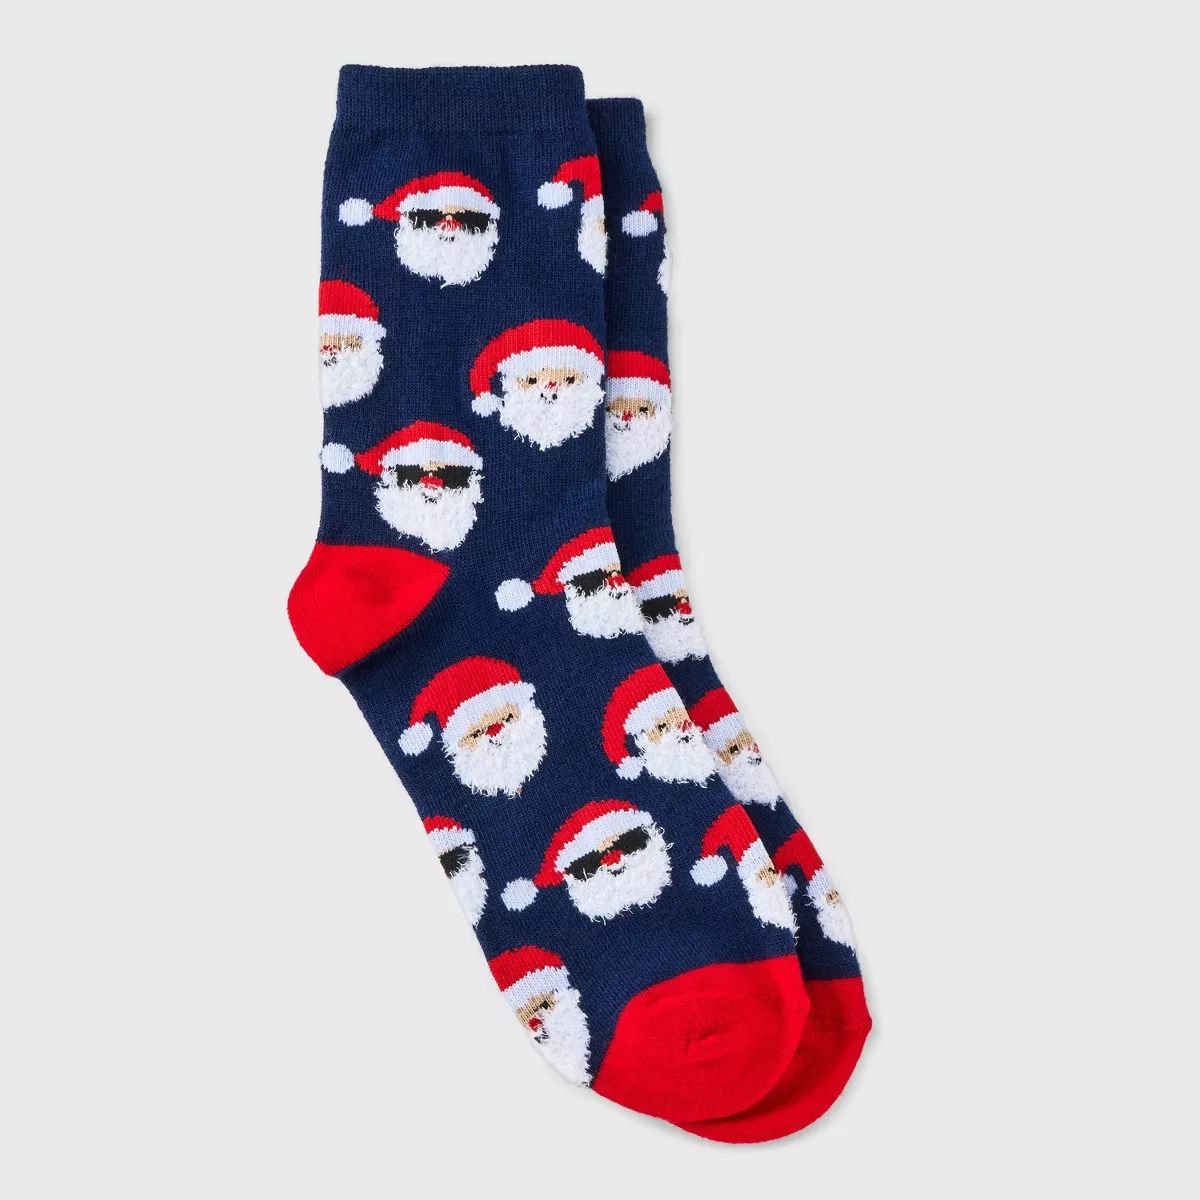 Women's Santa Holiday Crew Socks - Wondershop™ Navy/Red 4-10 | Target